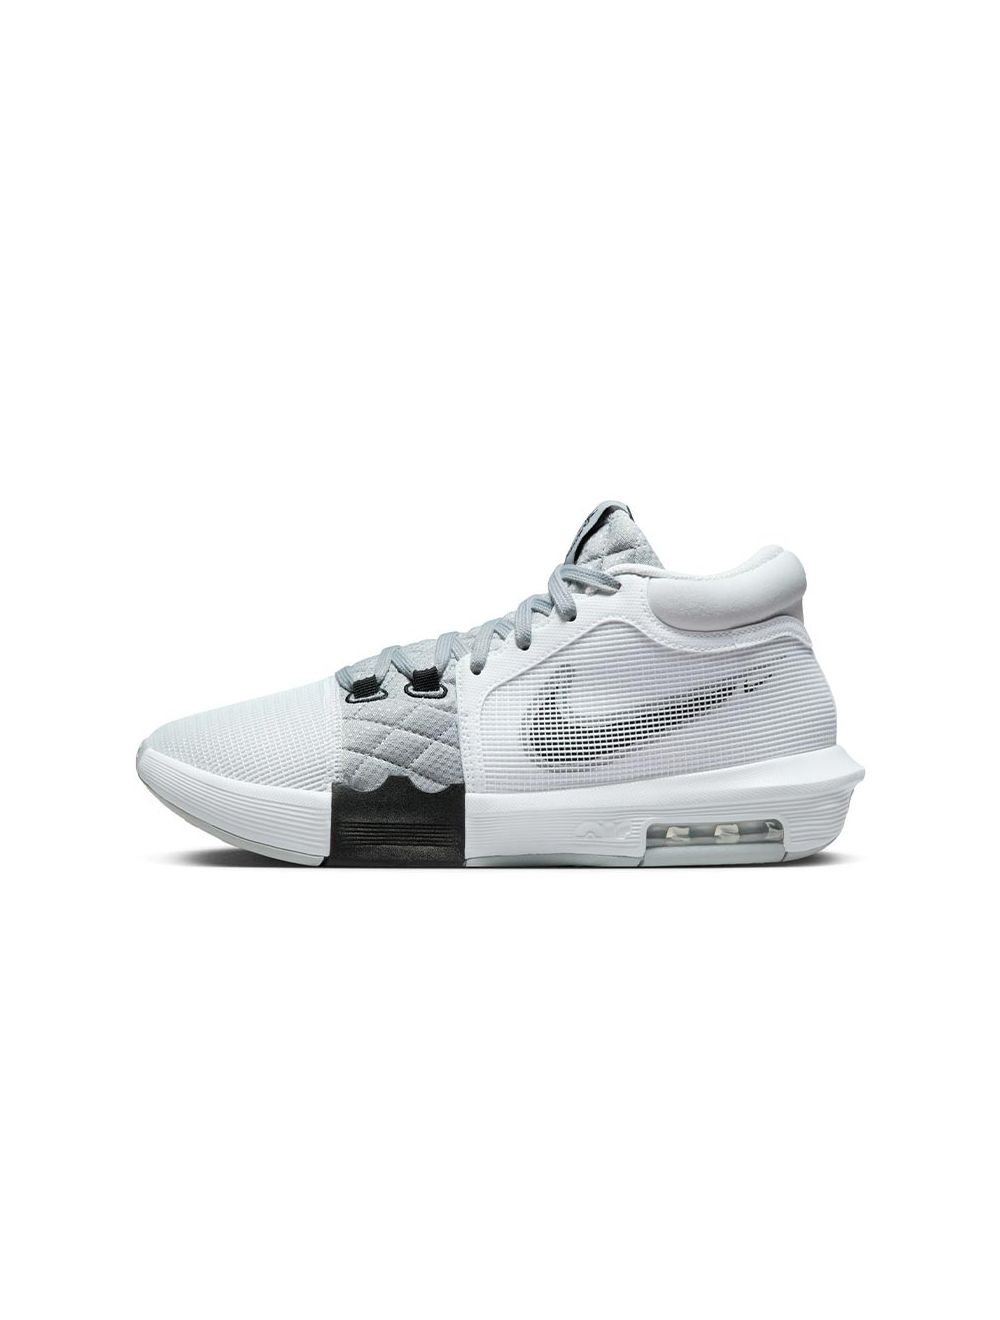 Shop Nike Lebron Witness 8 Mens Shoes White/Black/Sail | Studio 8